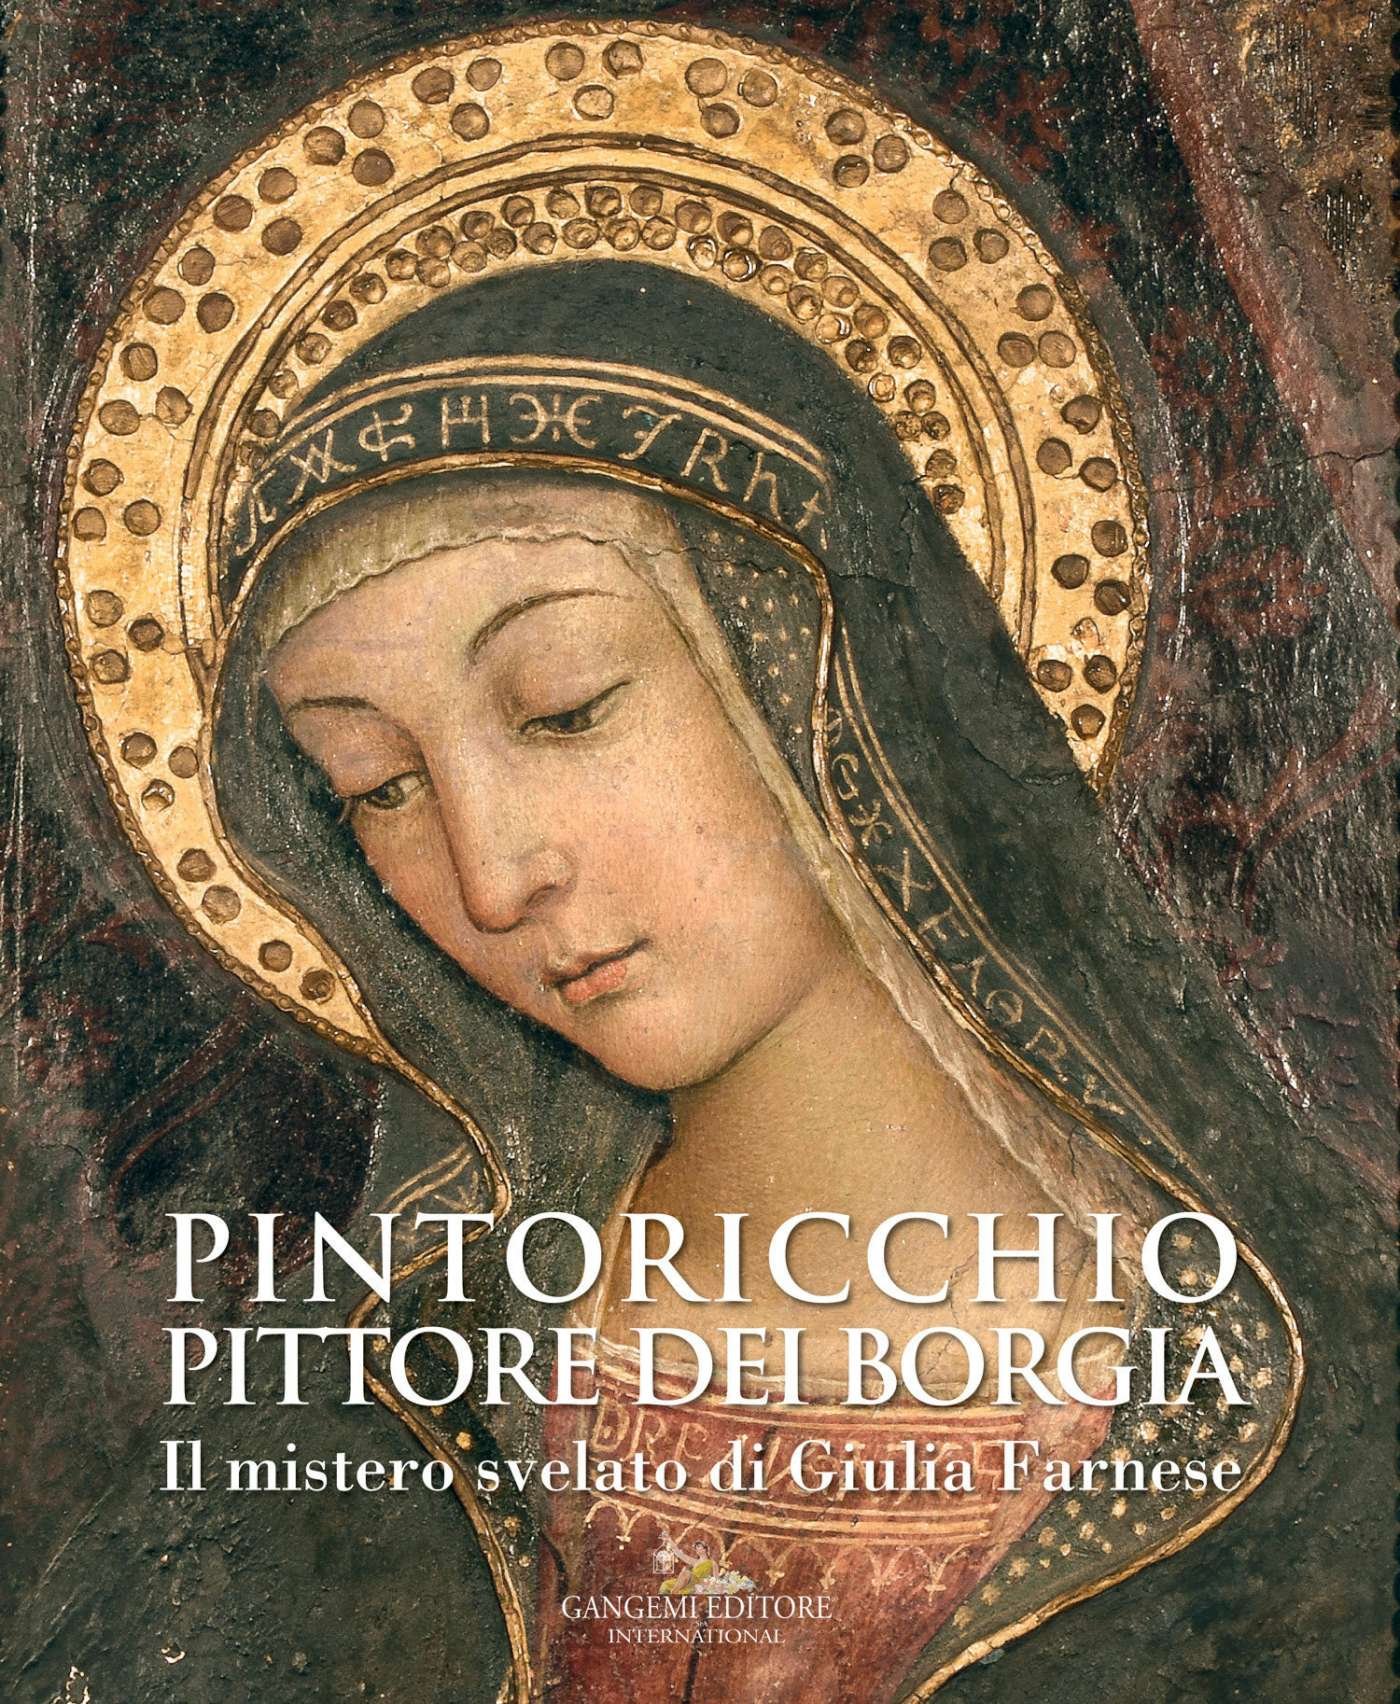 Pintoricchio (Pinturicchio). Pittore dei Borgia: Il mistero svelato di Giulia Farnese (Italian Edition)